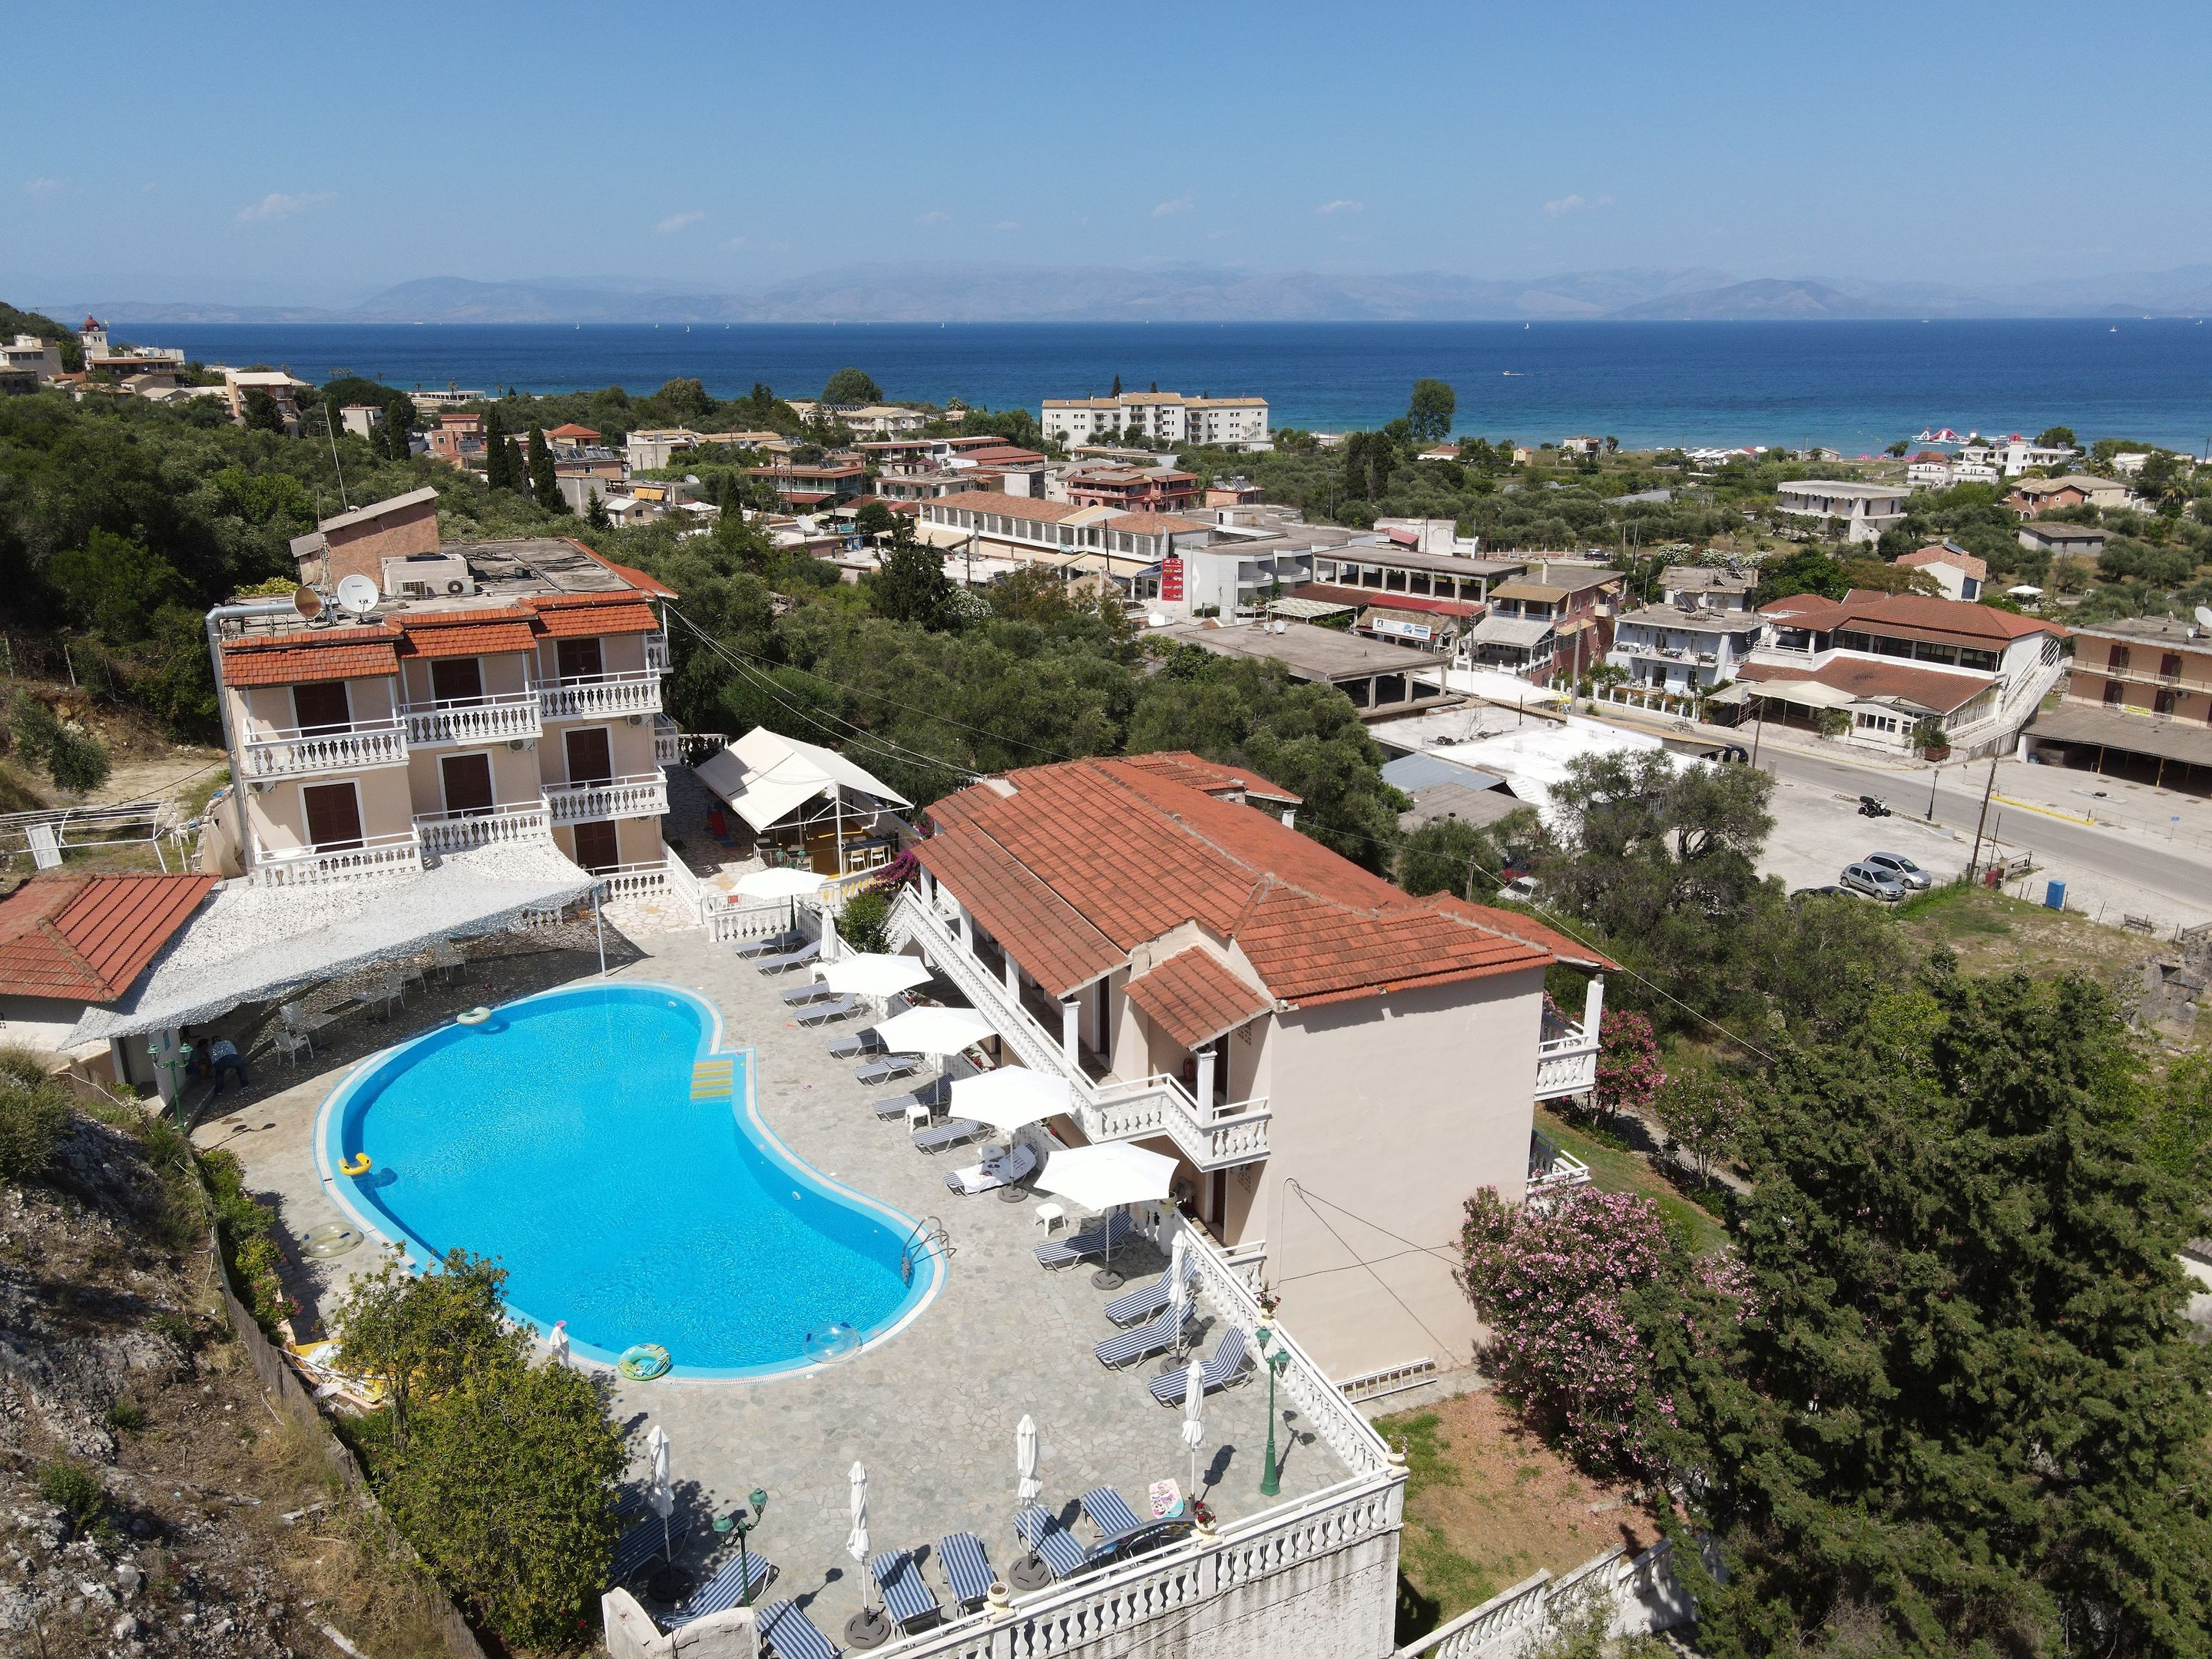 Corfu Panorama